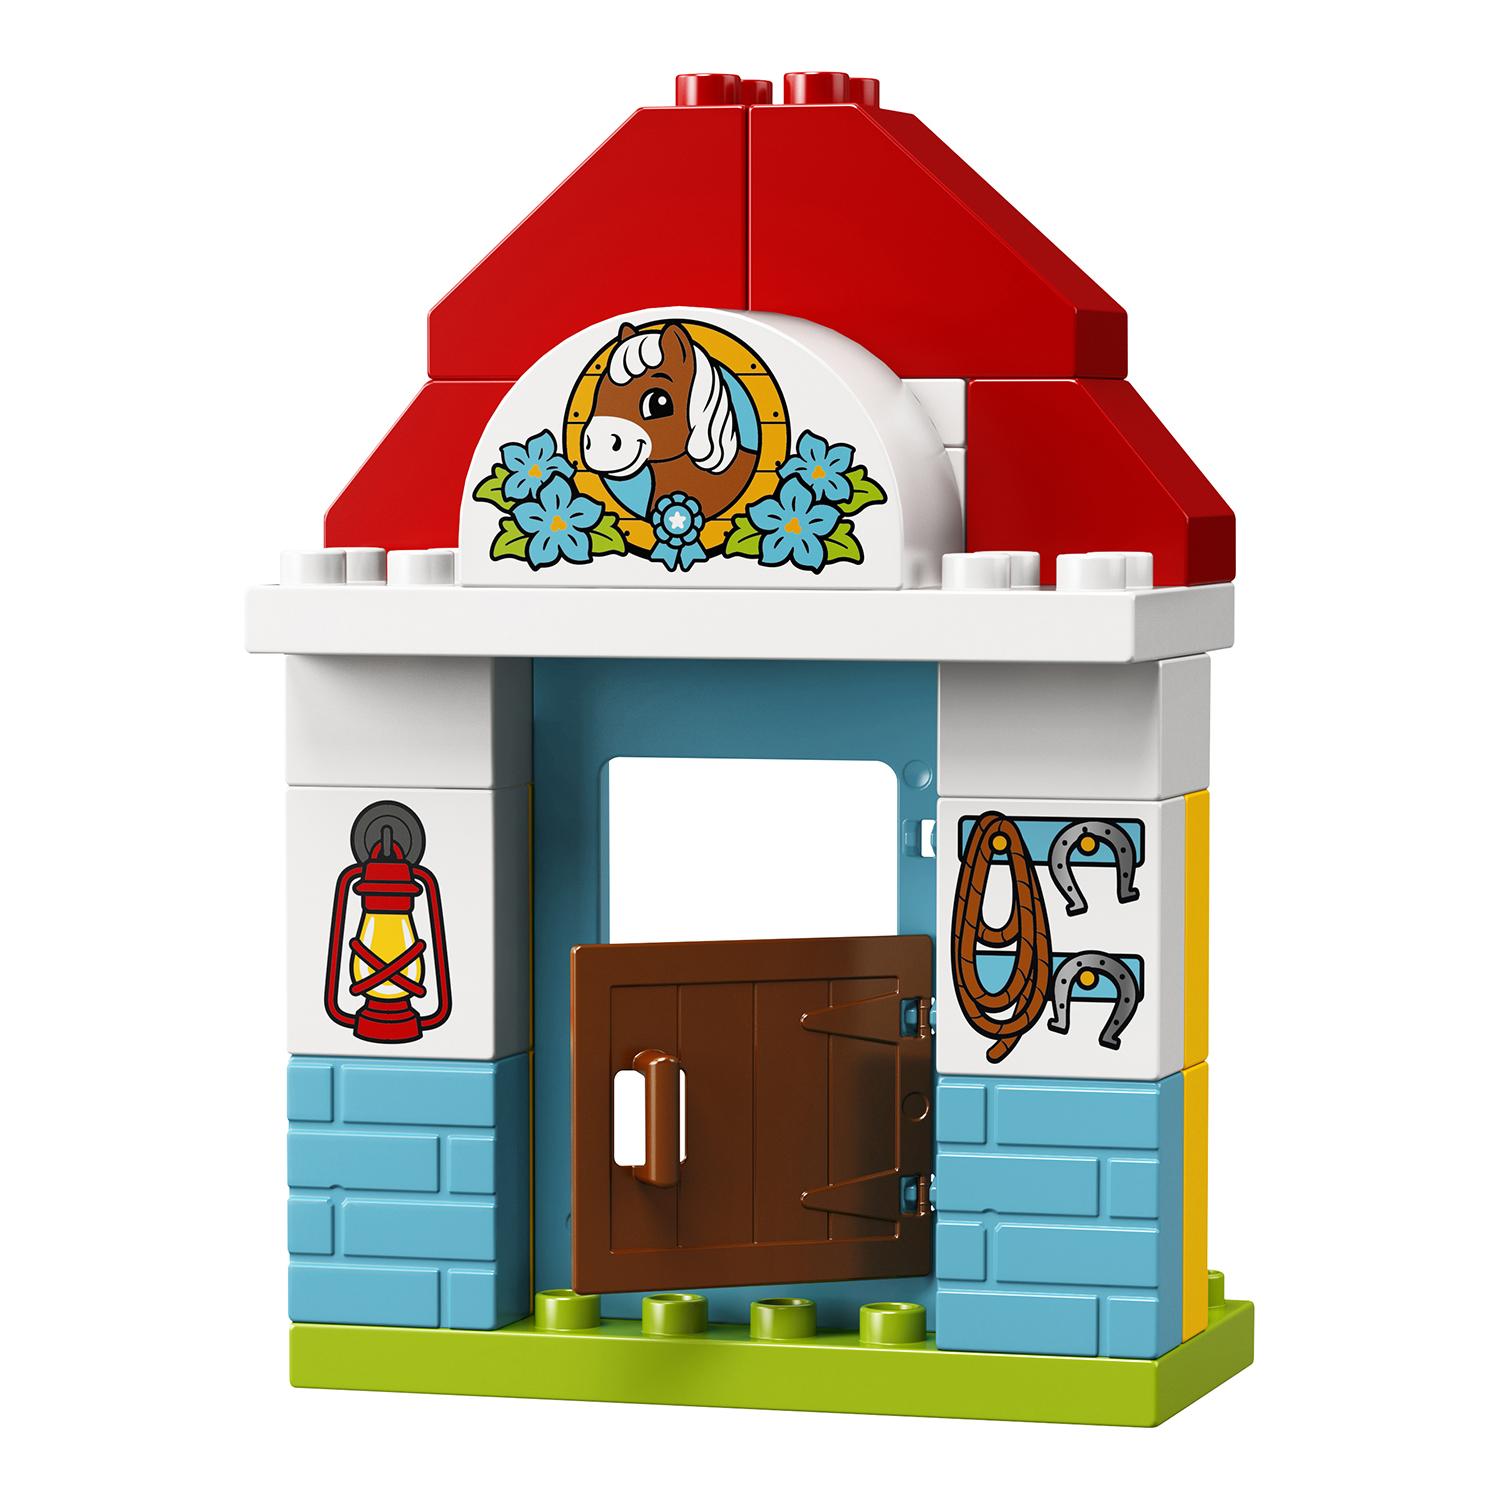 Lego Duplo 10868 Конюшня на ферме